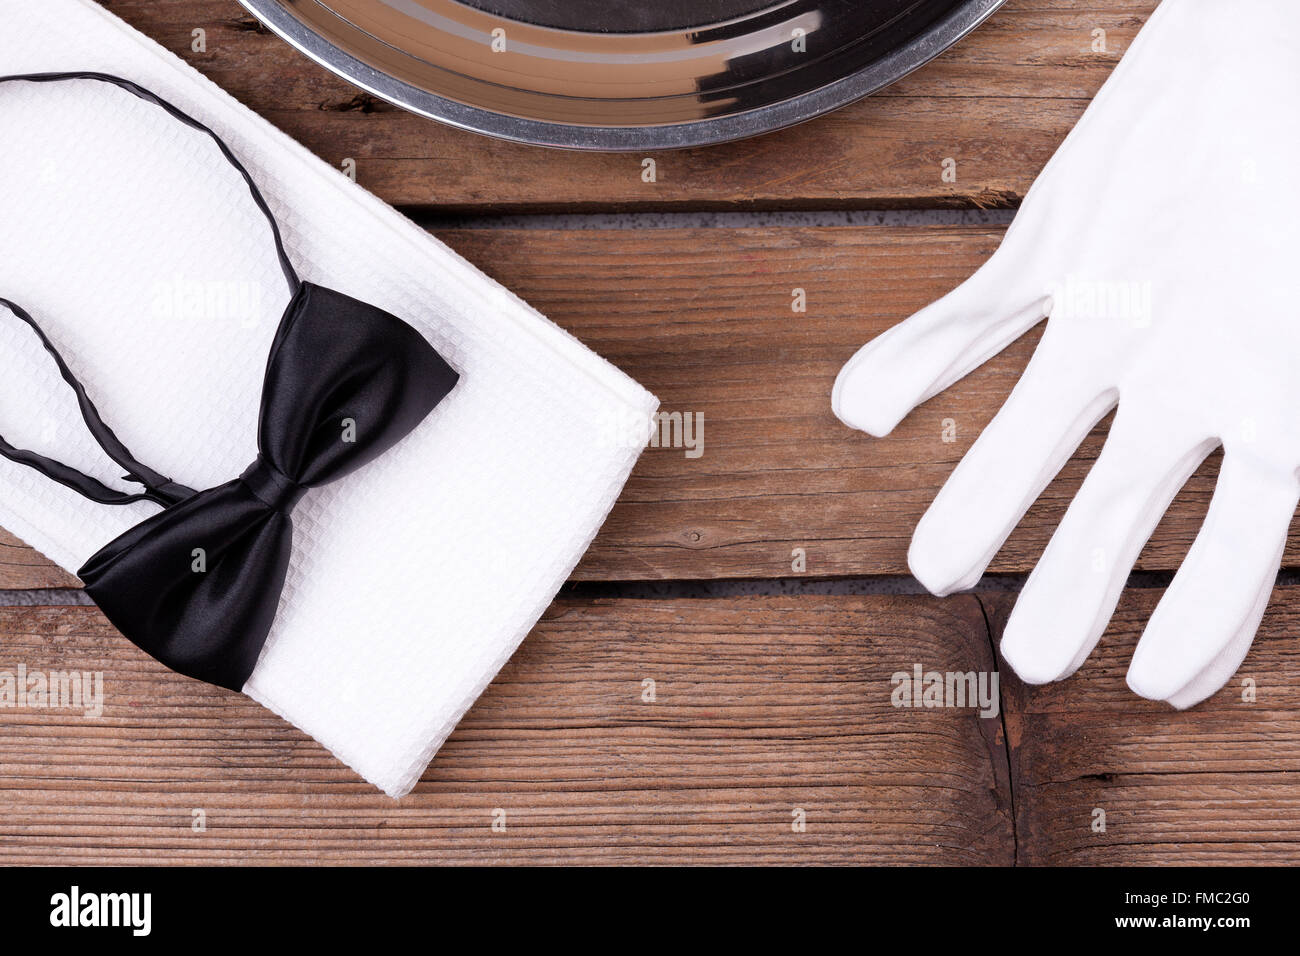 Draufsicht von einem Kellner Tablett, Fliege, Handschuhe und eine Serviette auf hölzernen Hintergrund Stockfoto